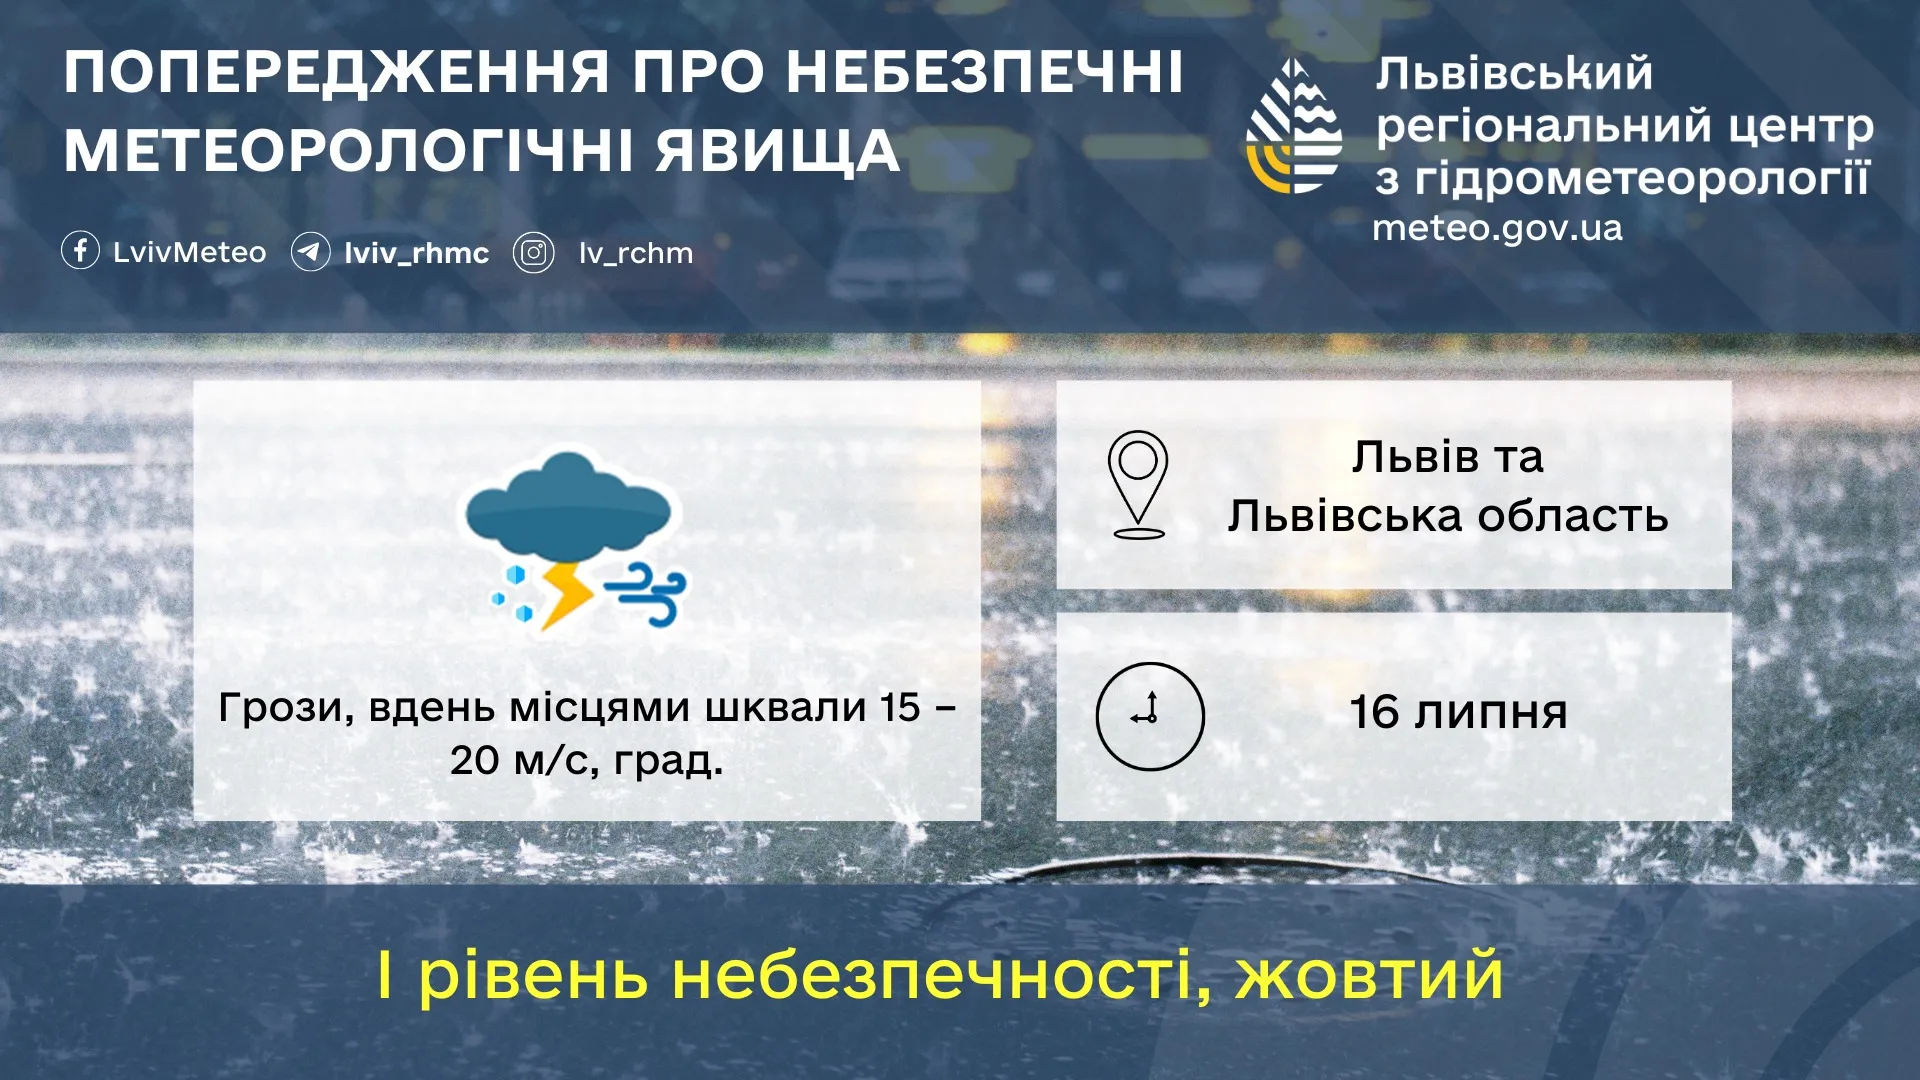 Во Львовской области объявили штормовое предупреждение на 16 июля